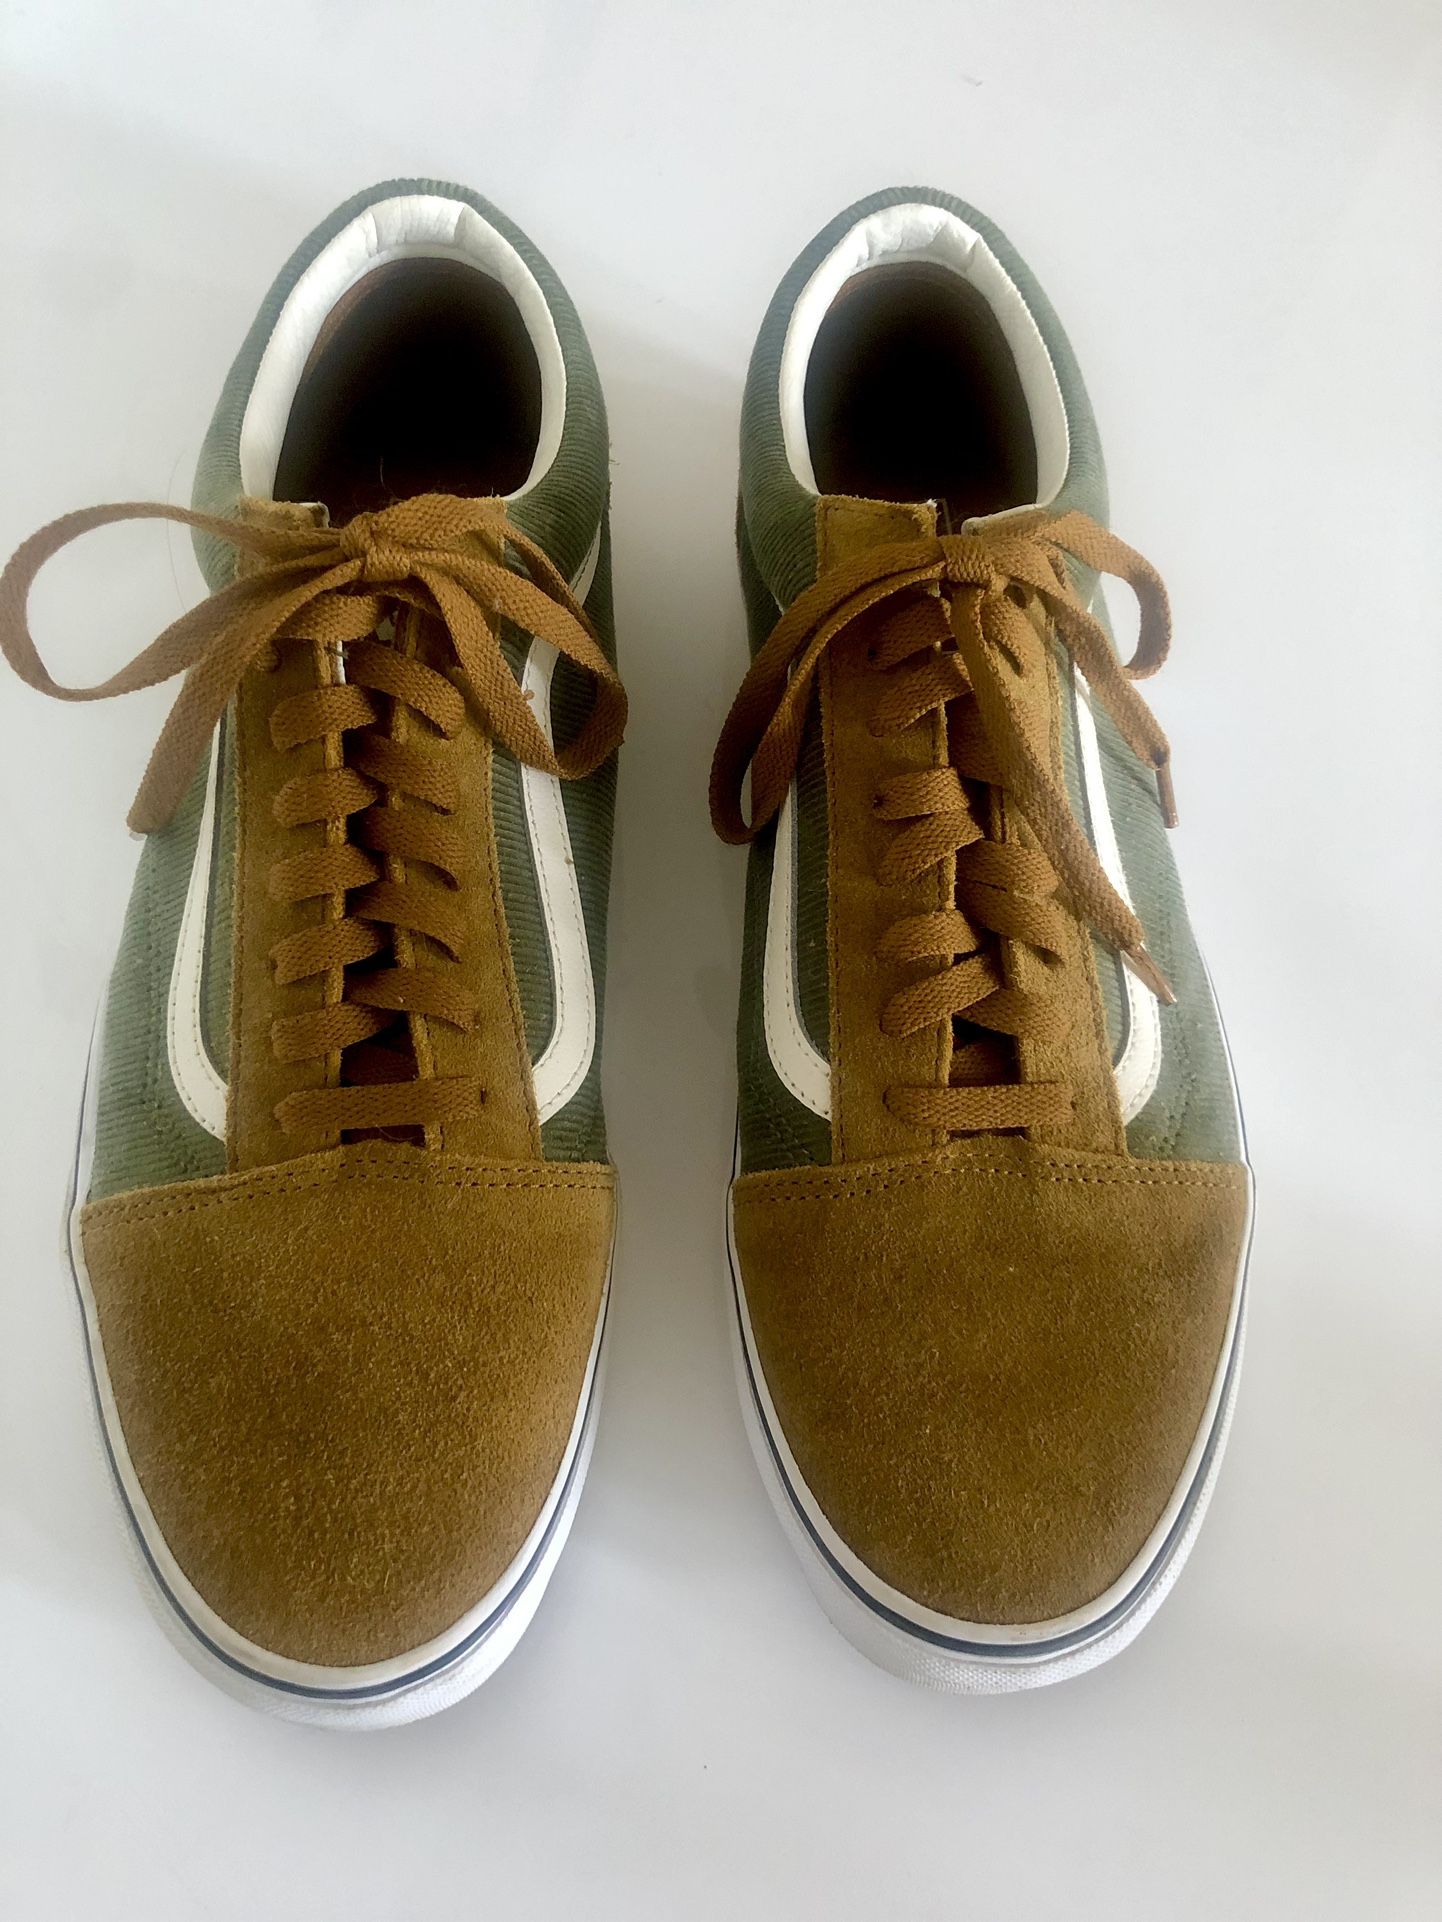 Men’s Vans Old Skool Sneakers